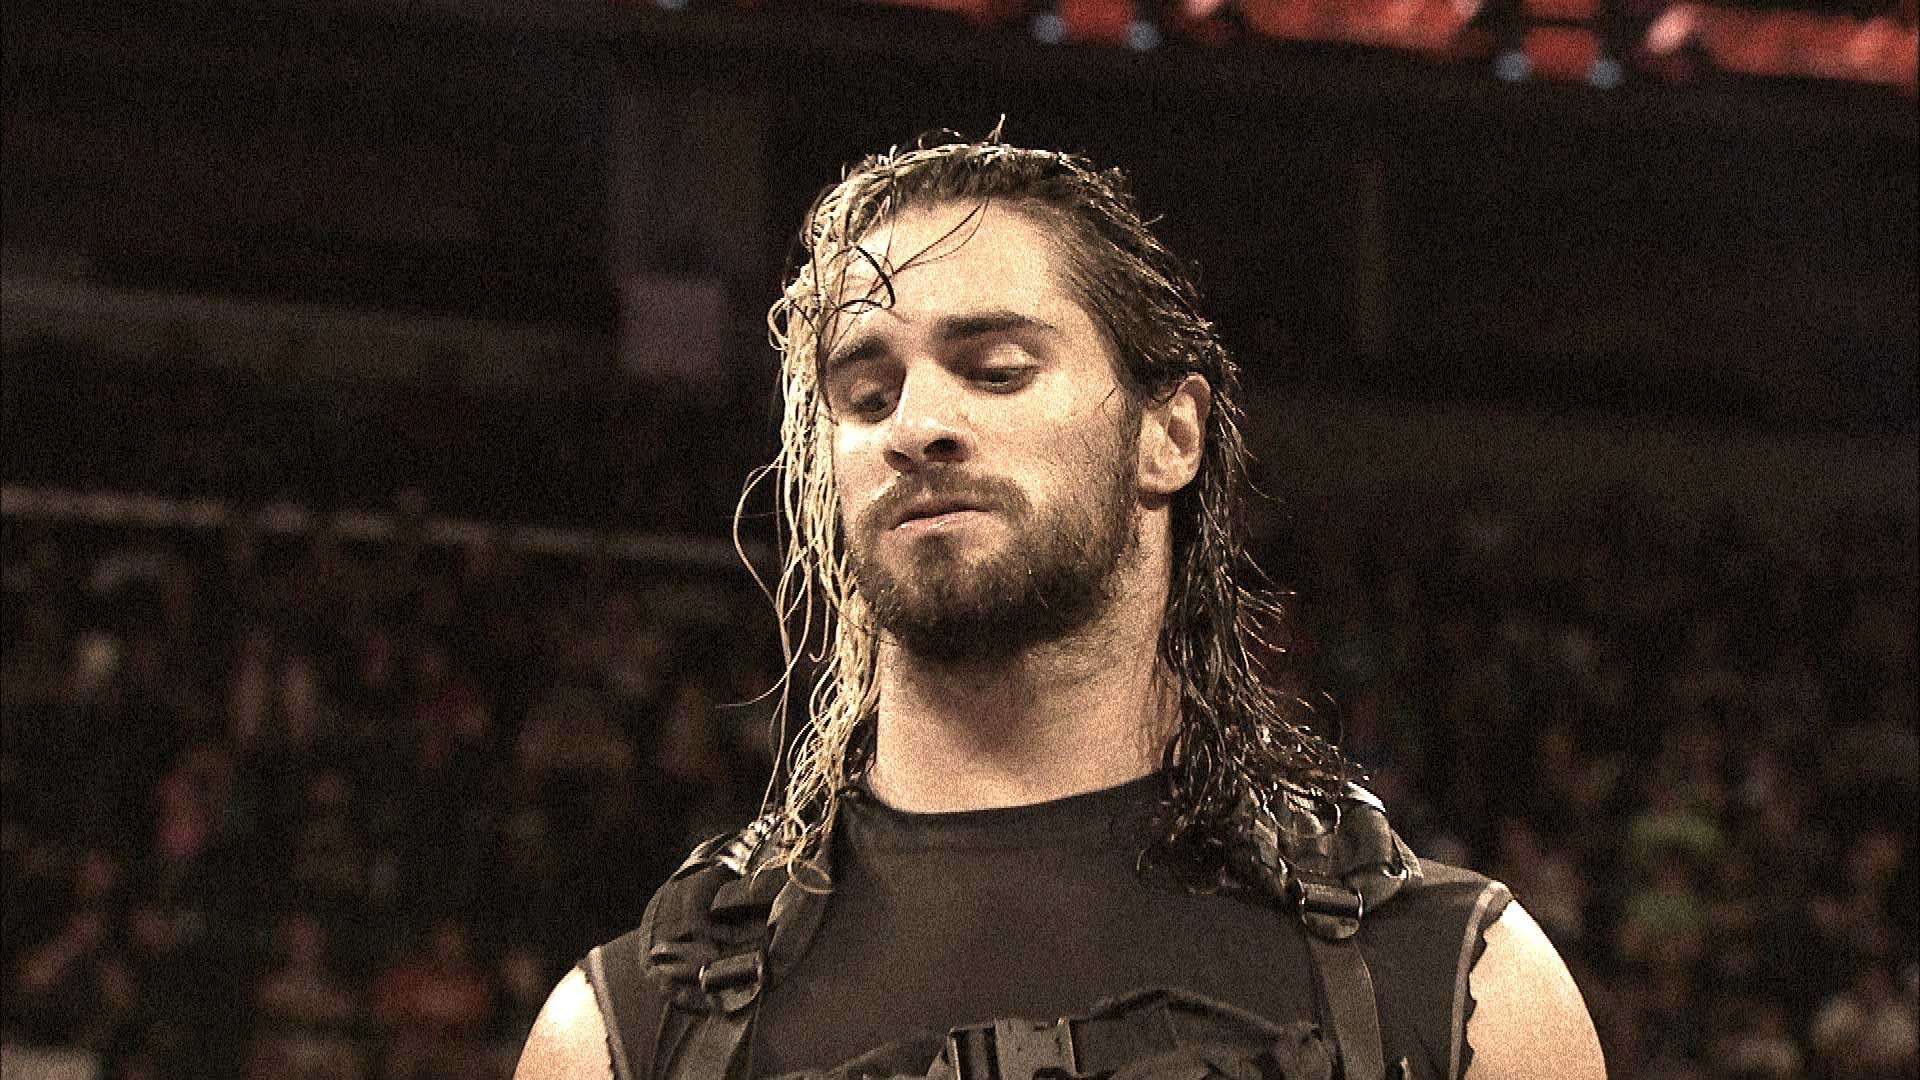 Seth Rollins destroys The Shield